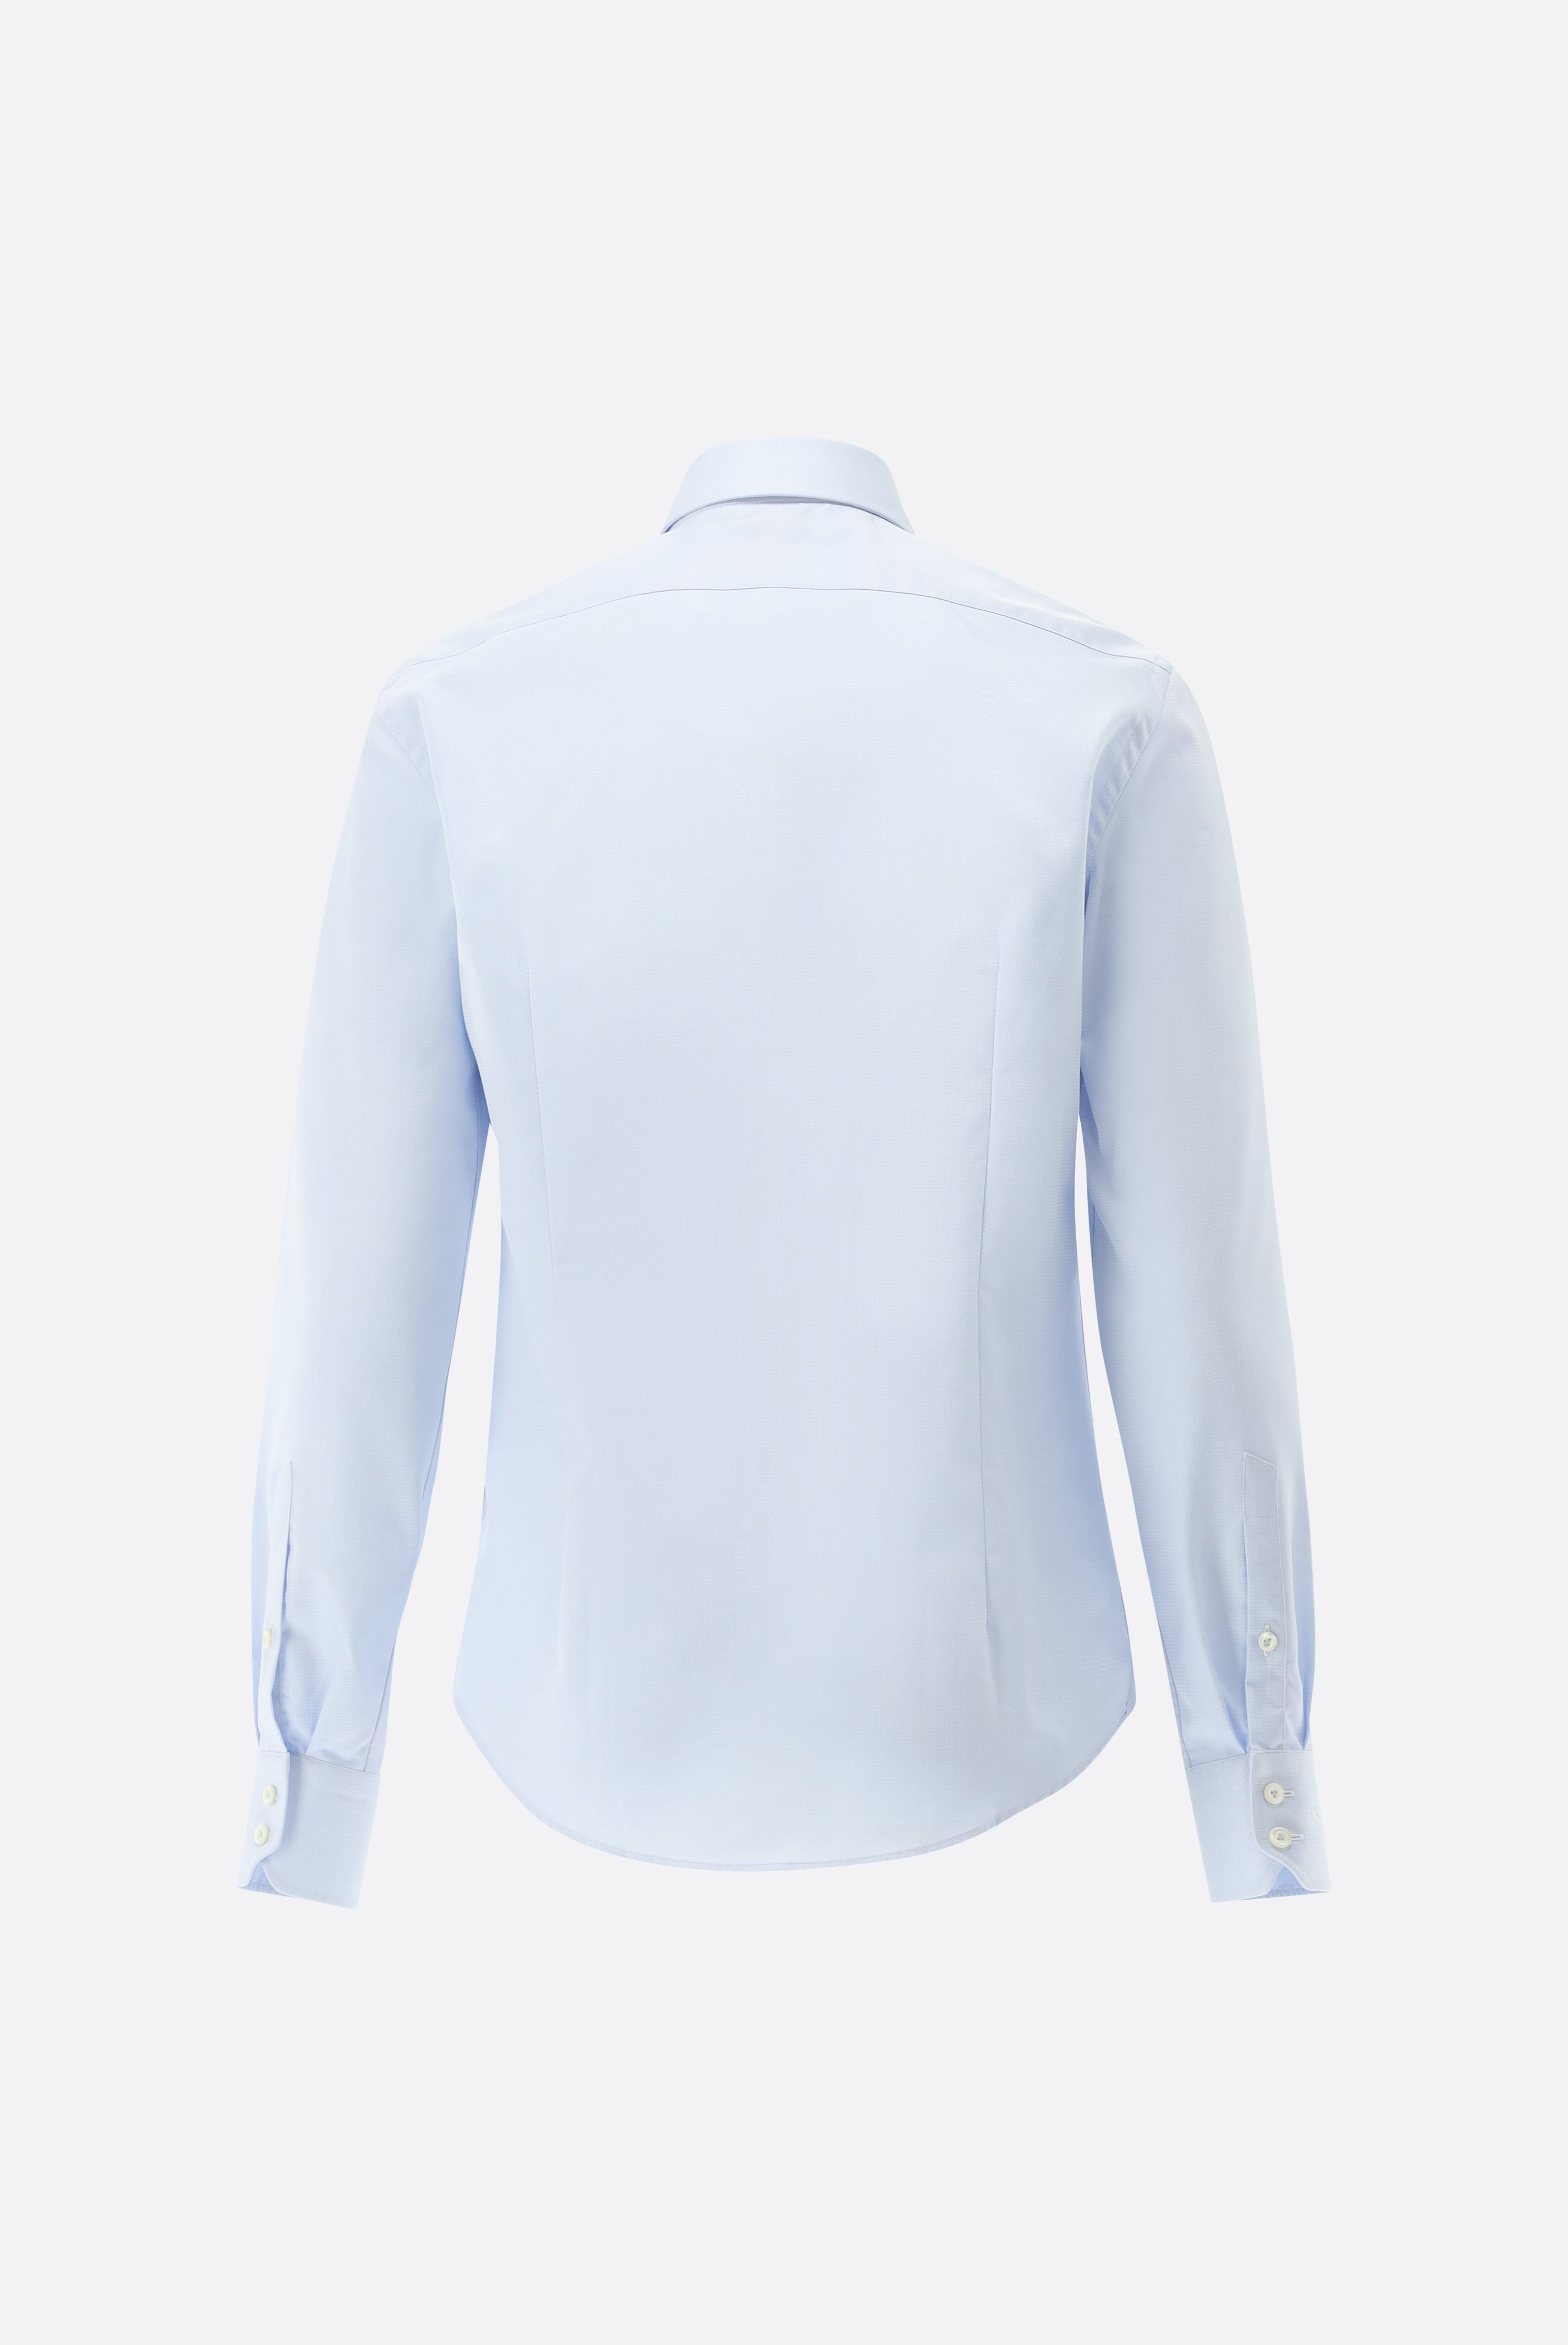 Bügelleichte Hemden+Bügelfreies Twil Hemd mit Struktur Slim Fit+20.2019.BQ.150301.720.46